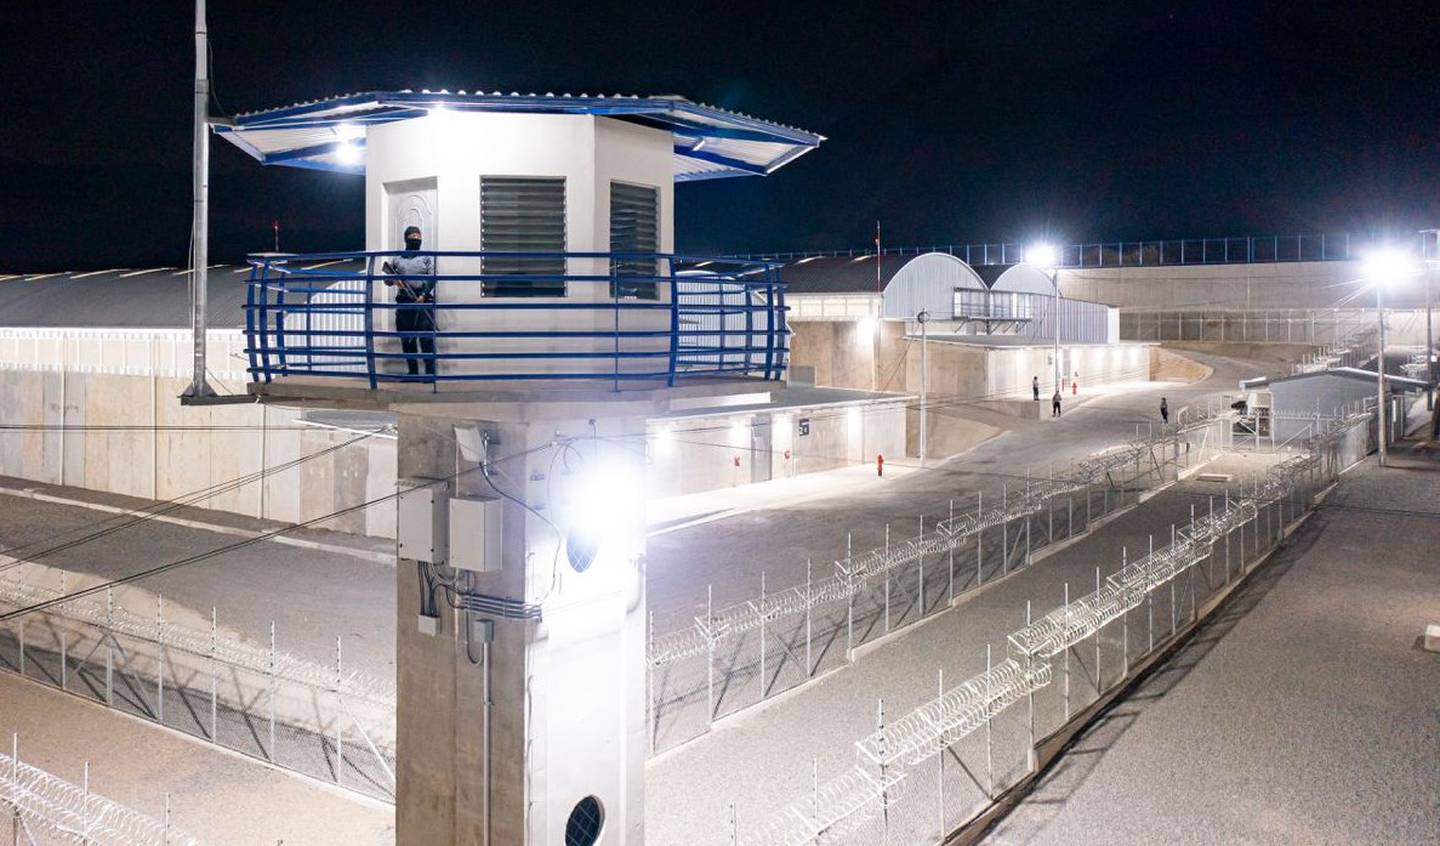 La prisión posee un muro perimetral de 2,1 kilómetros, que será vigilado día y noche por 600 soldados y 250 policías.dfd